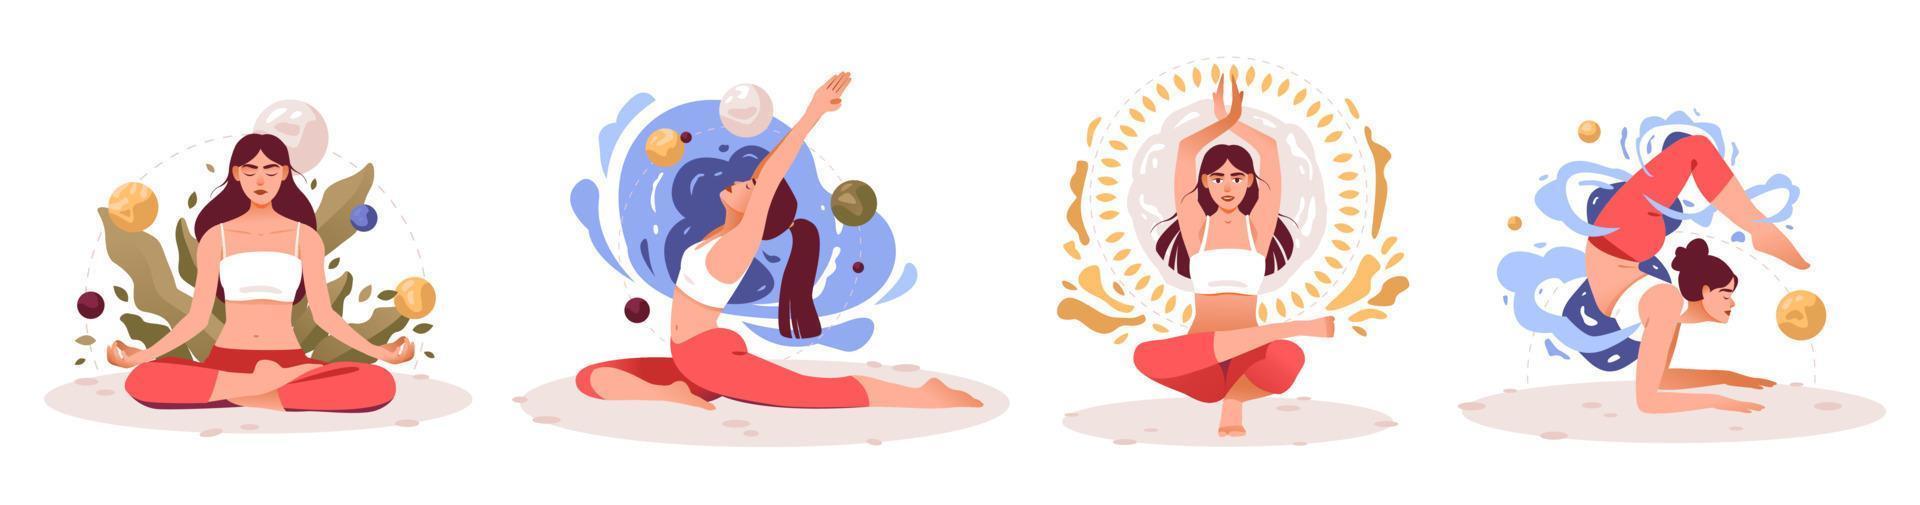 vrouwen beoefenen yoga en meditatie. meditatie beoefenen. het concept van zen en harmonie. mentale gezondheid. een meisje in verschillende yogahoudingen. vector illustratie